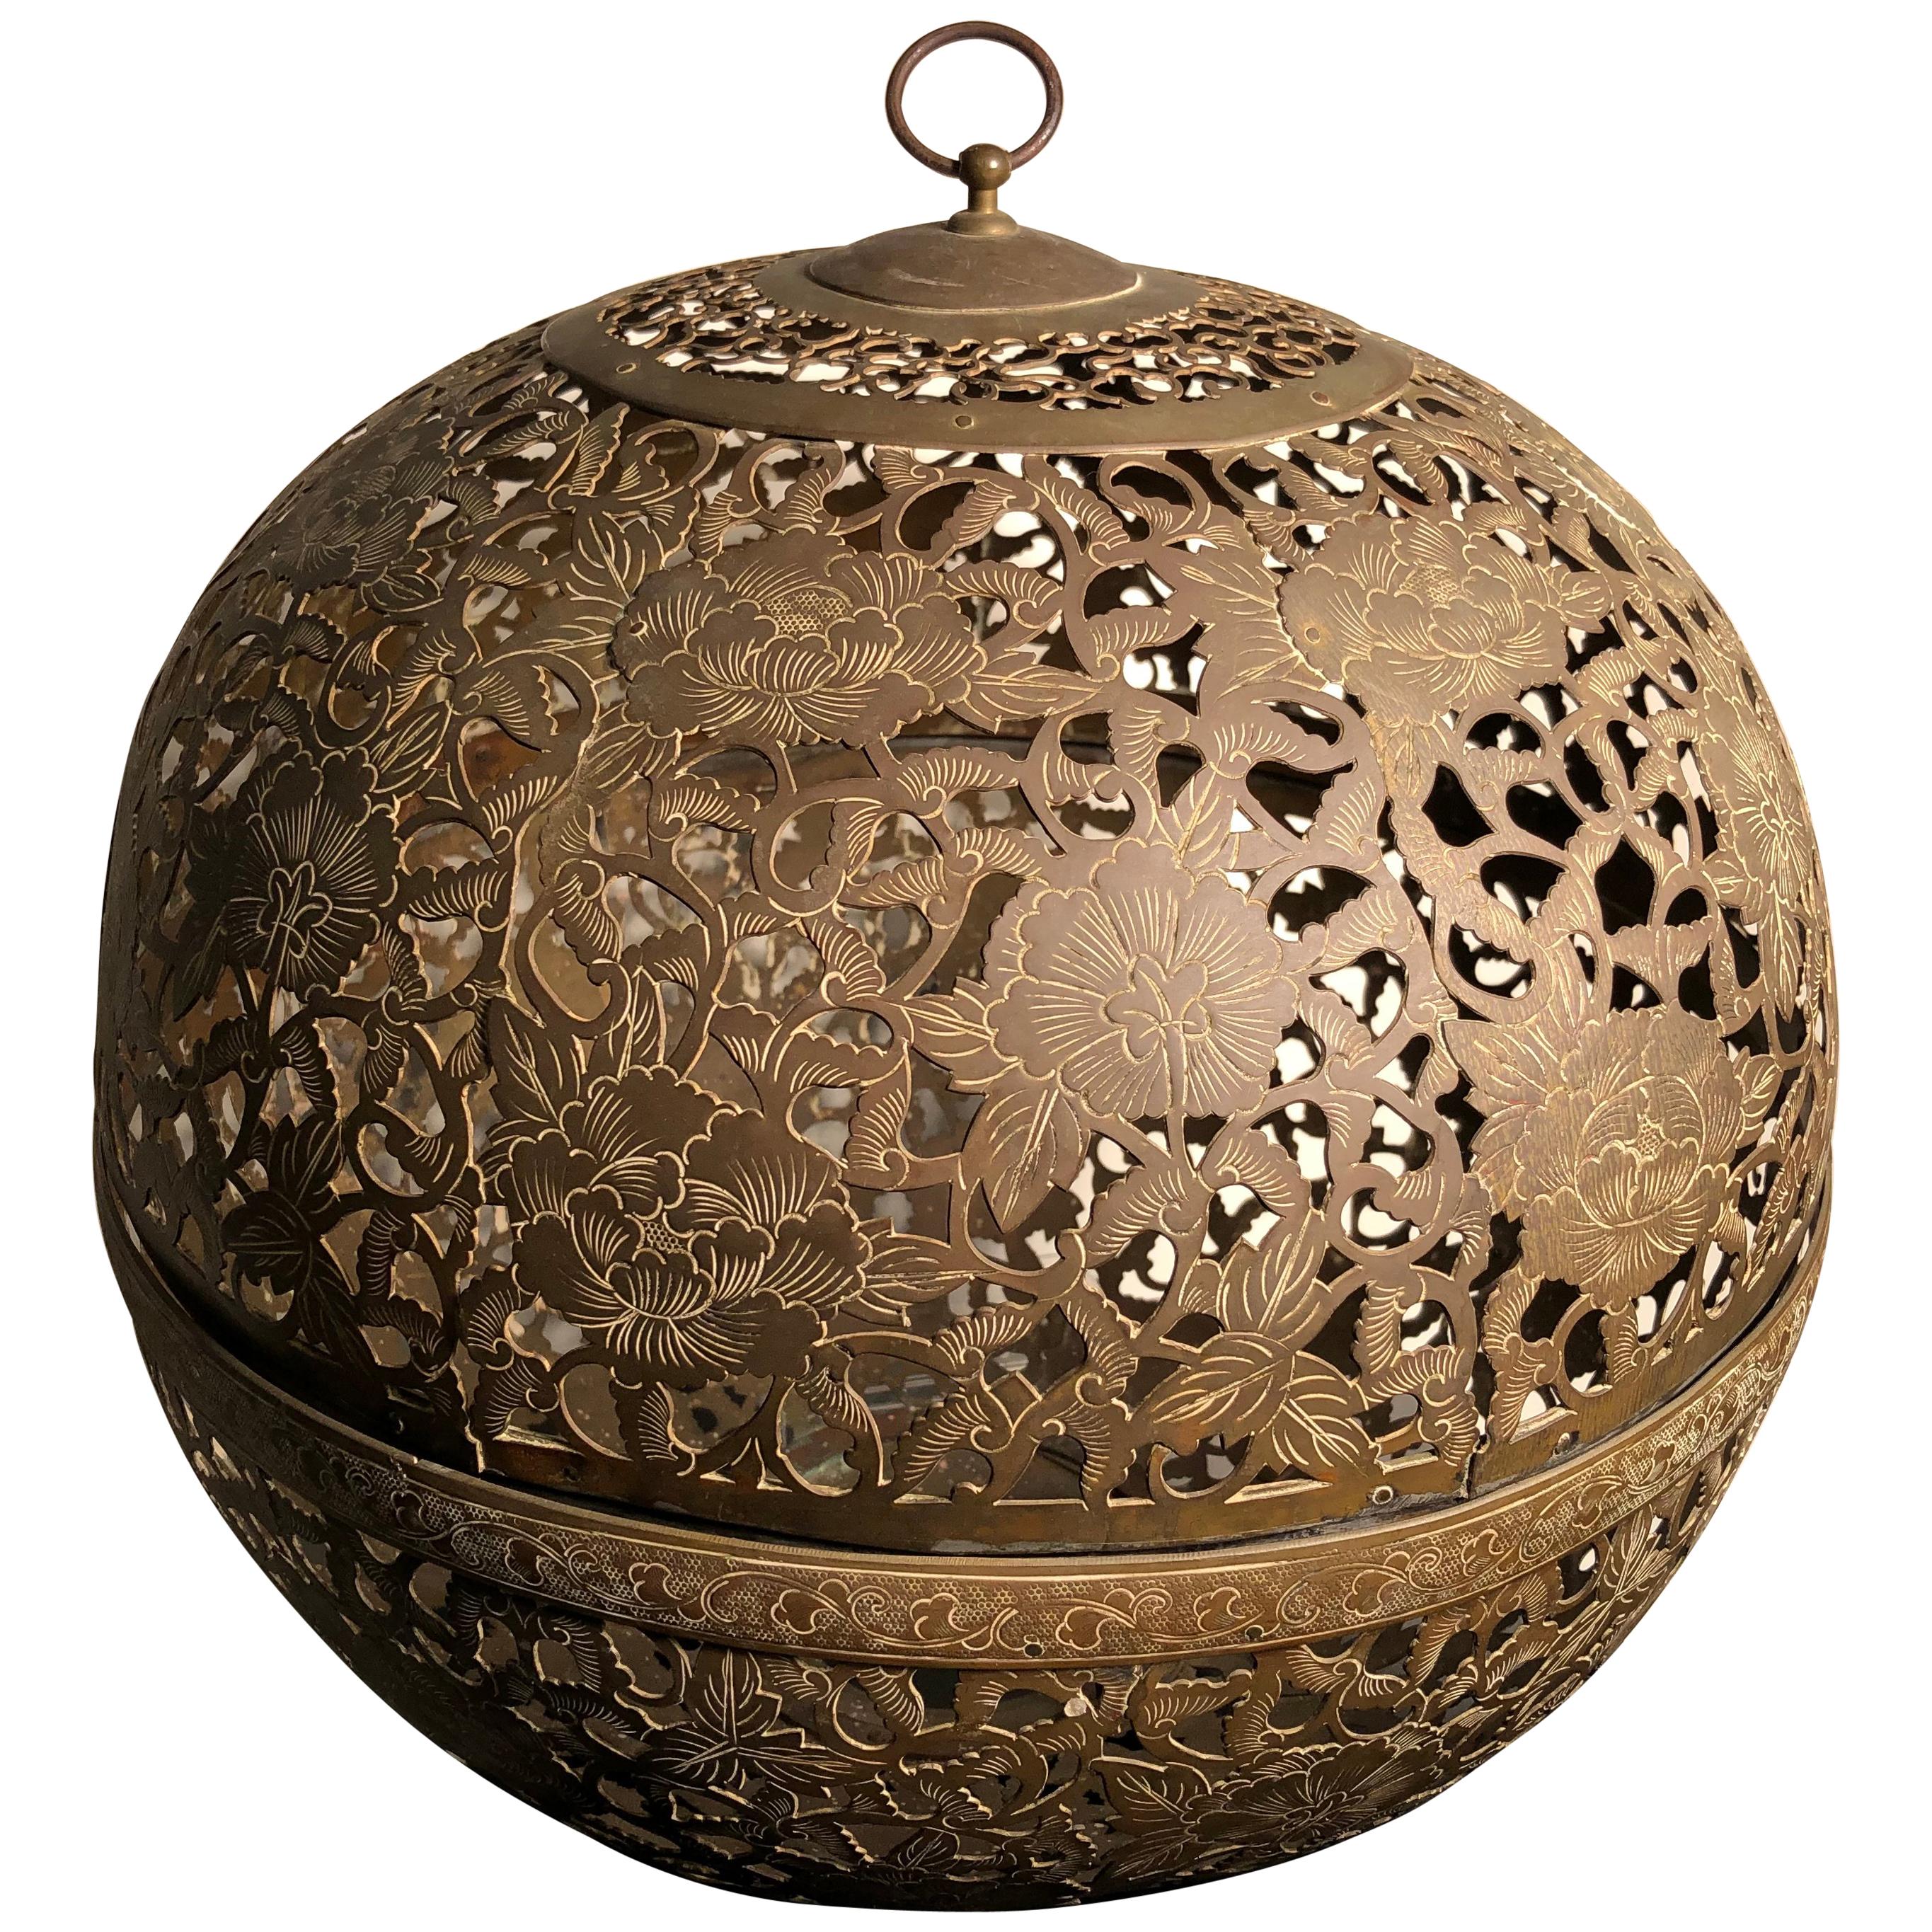 Japan Antique Huge Gold Gilt "Flower" Globe Lantern, Exquisite Details